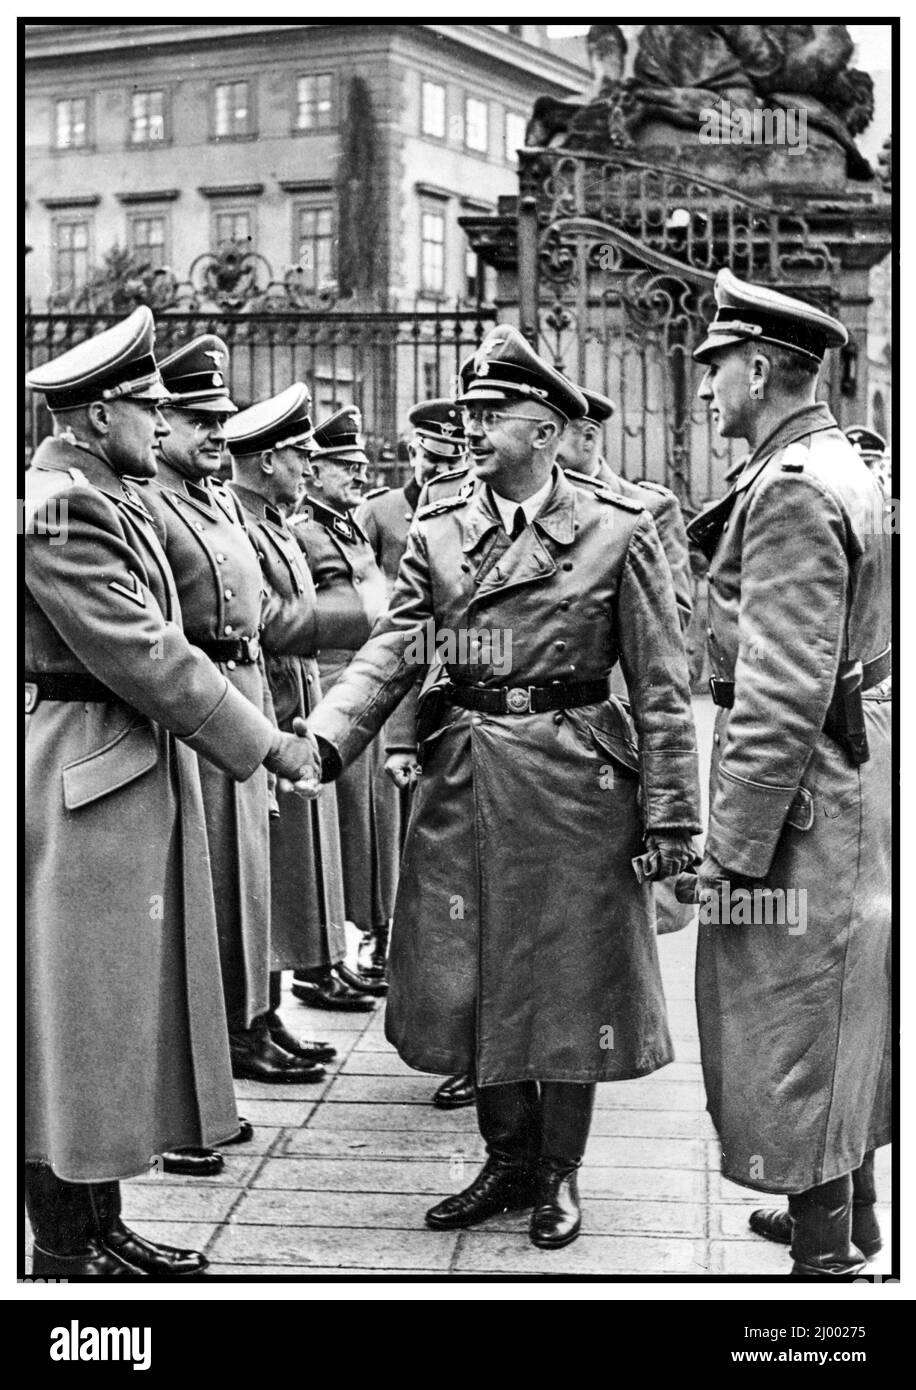 Reinhard Heydrich 1941 – le commandant du Bureau principal de la sécurité de Reich (RSHA), gouverneur par intérim du protectorat de Bohême et Moravie, et un architecte principal de l'Holocauste avec Heinrich Luitpold Himmler Reichsführer du Schutzstaffel, et membre principal du Parti nazi d'Allemagne. Photographié à Prague, la Tchécoslovaquie rencontre des officiers nazis sous le commandement de Heydrich Banque D'Images